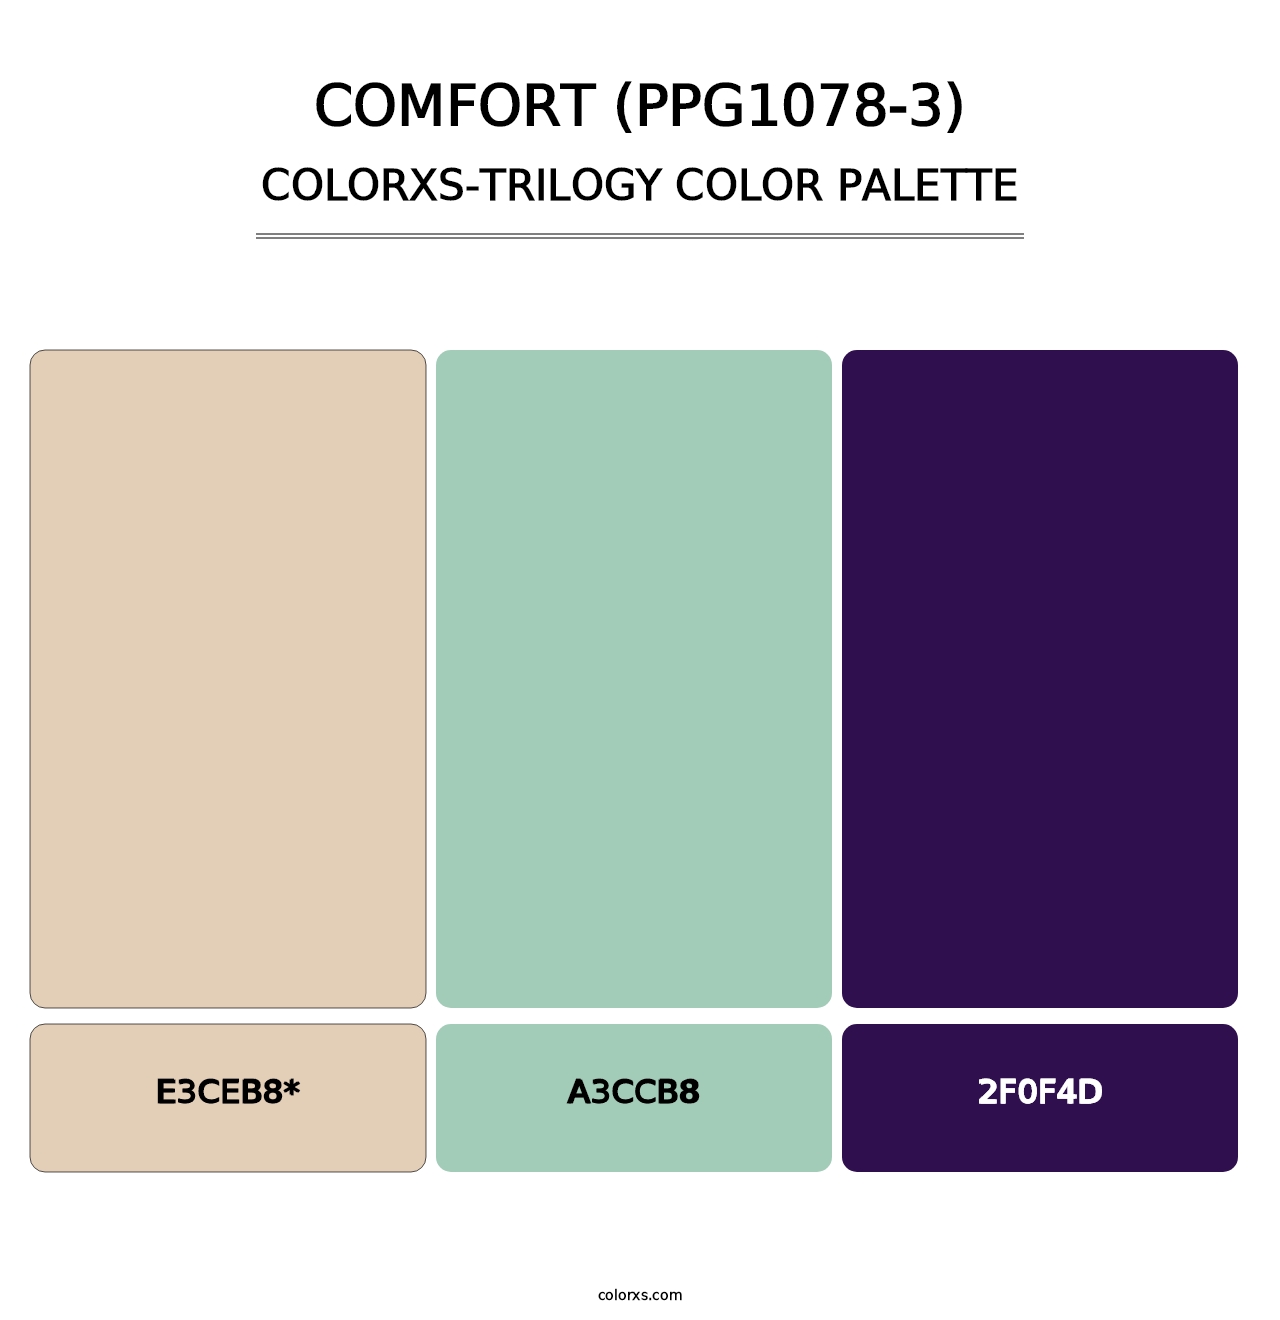 Comfort (PPG1078-3) - Colorxs Trilogy Palette